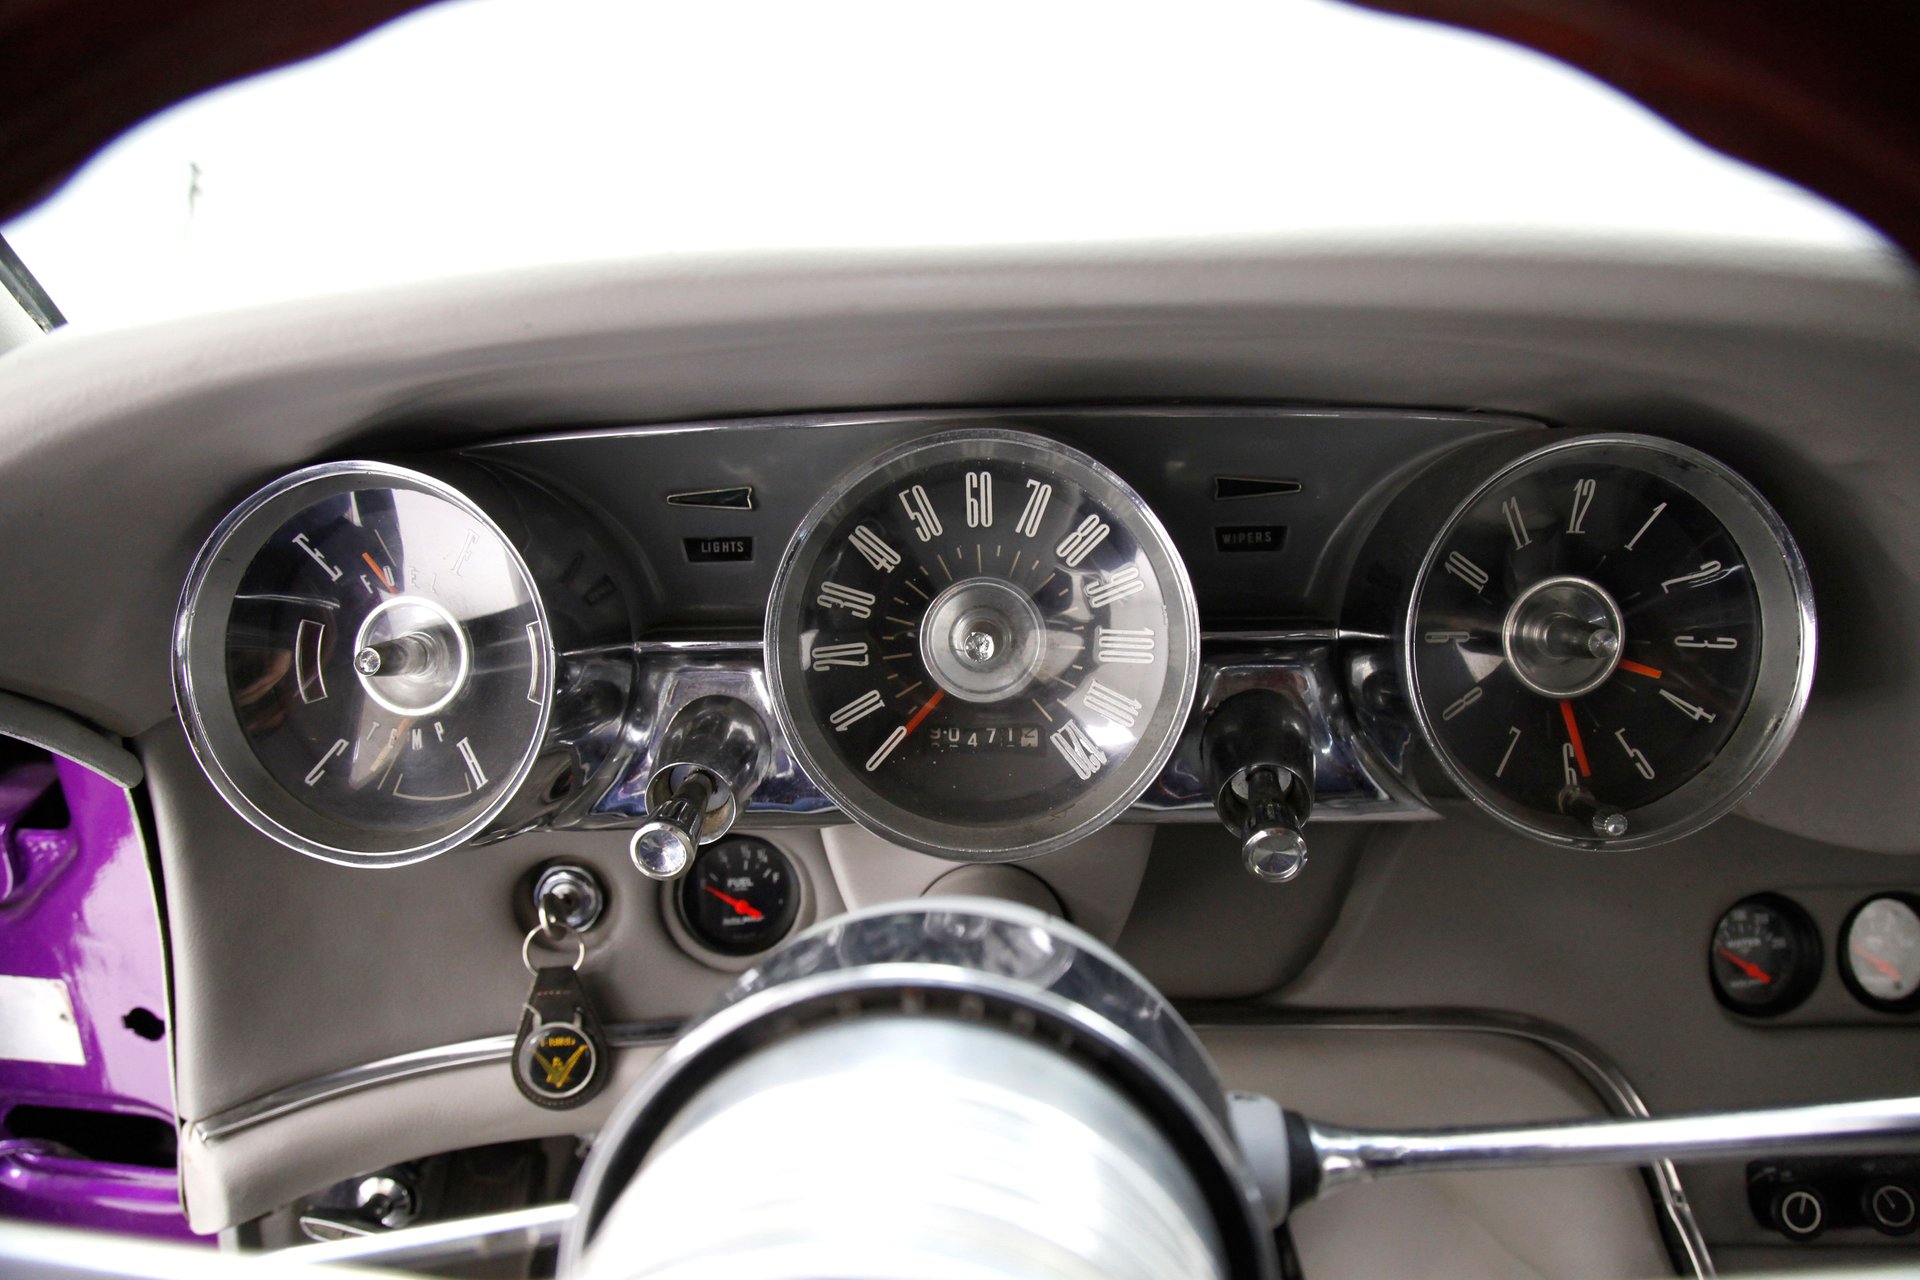 1962 Ford Thunderbird Coupe-11.jpg